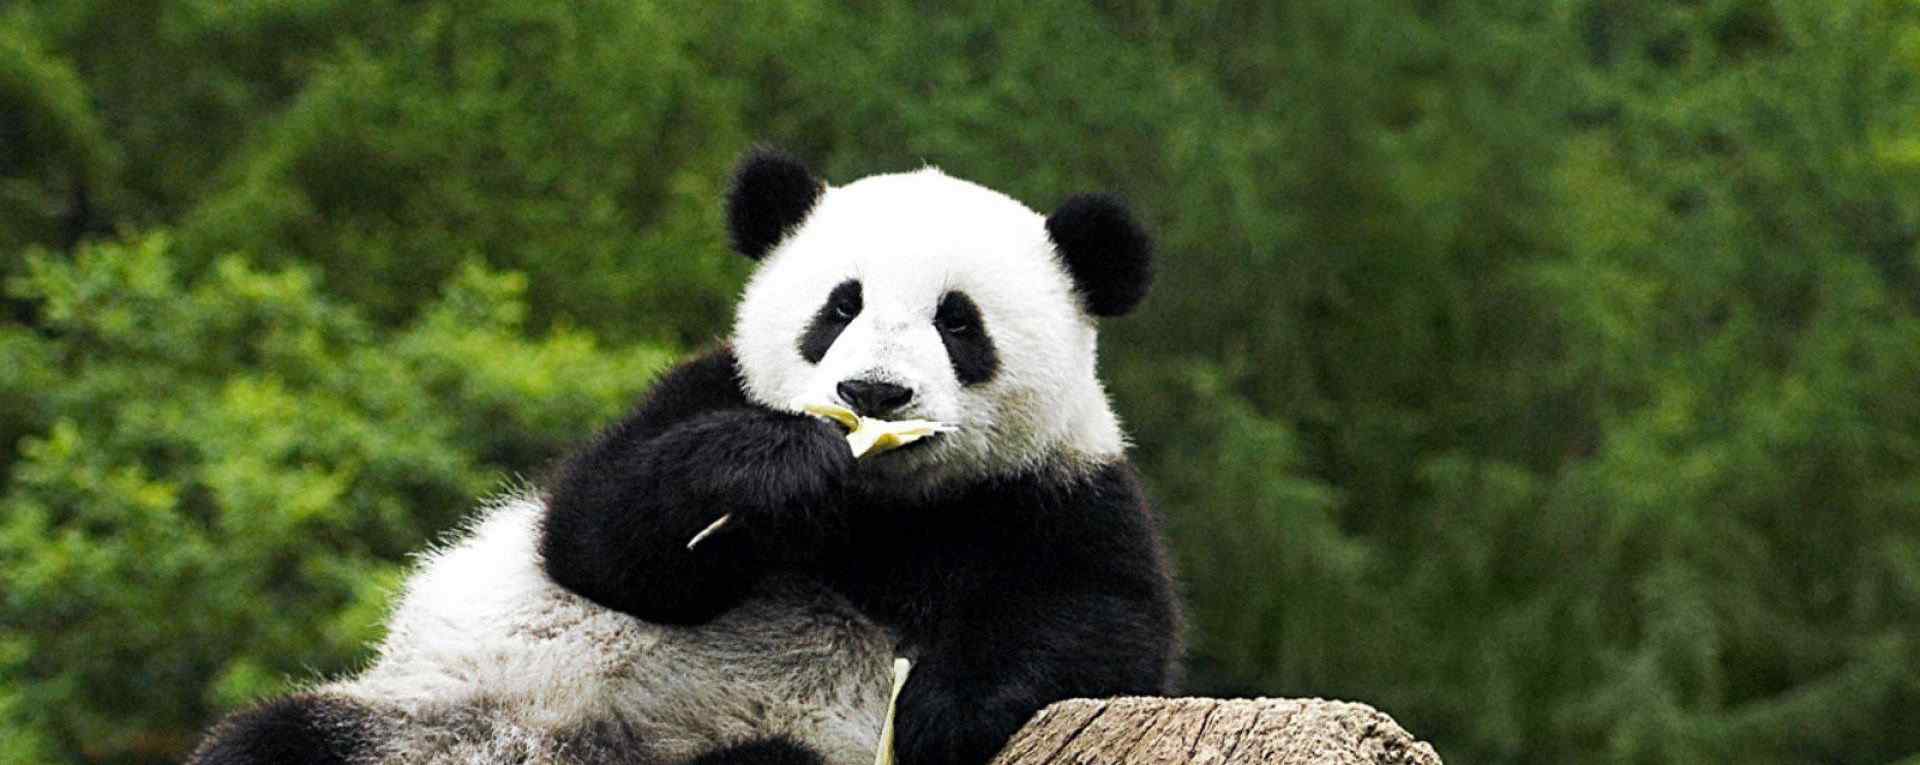 国宝大熊猫_呆萌可爱的大熊猫_野生大熊猫_大熊猫相关电影壁纸